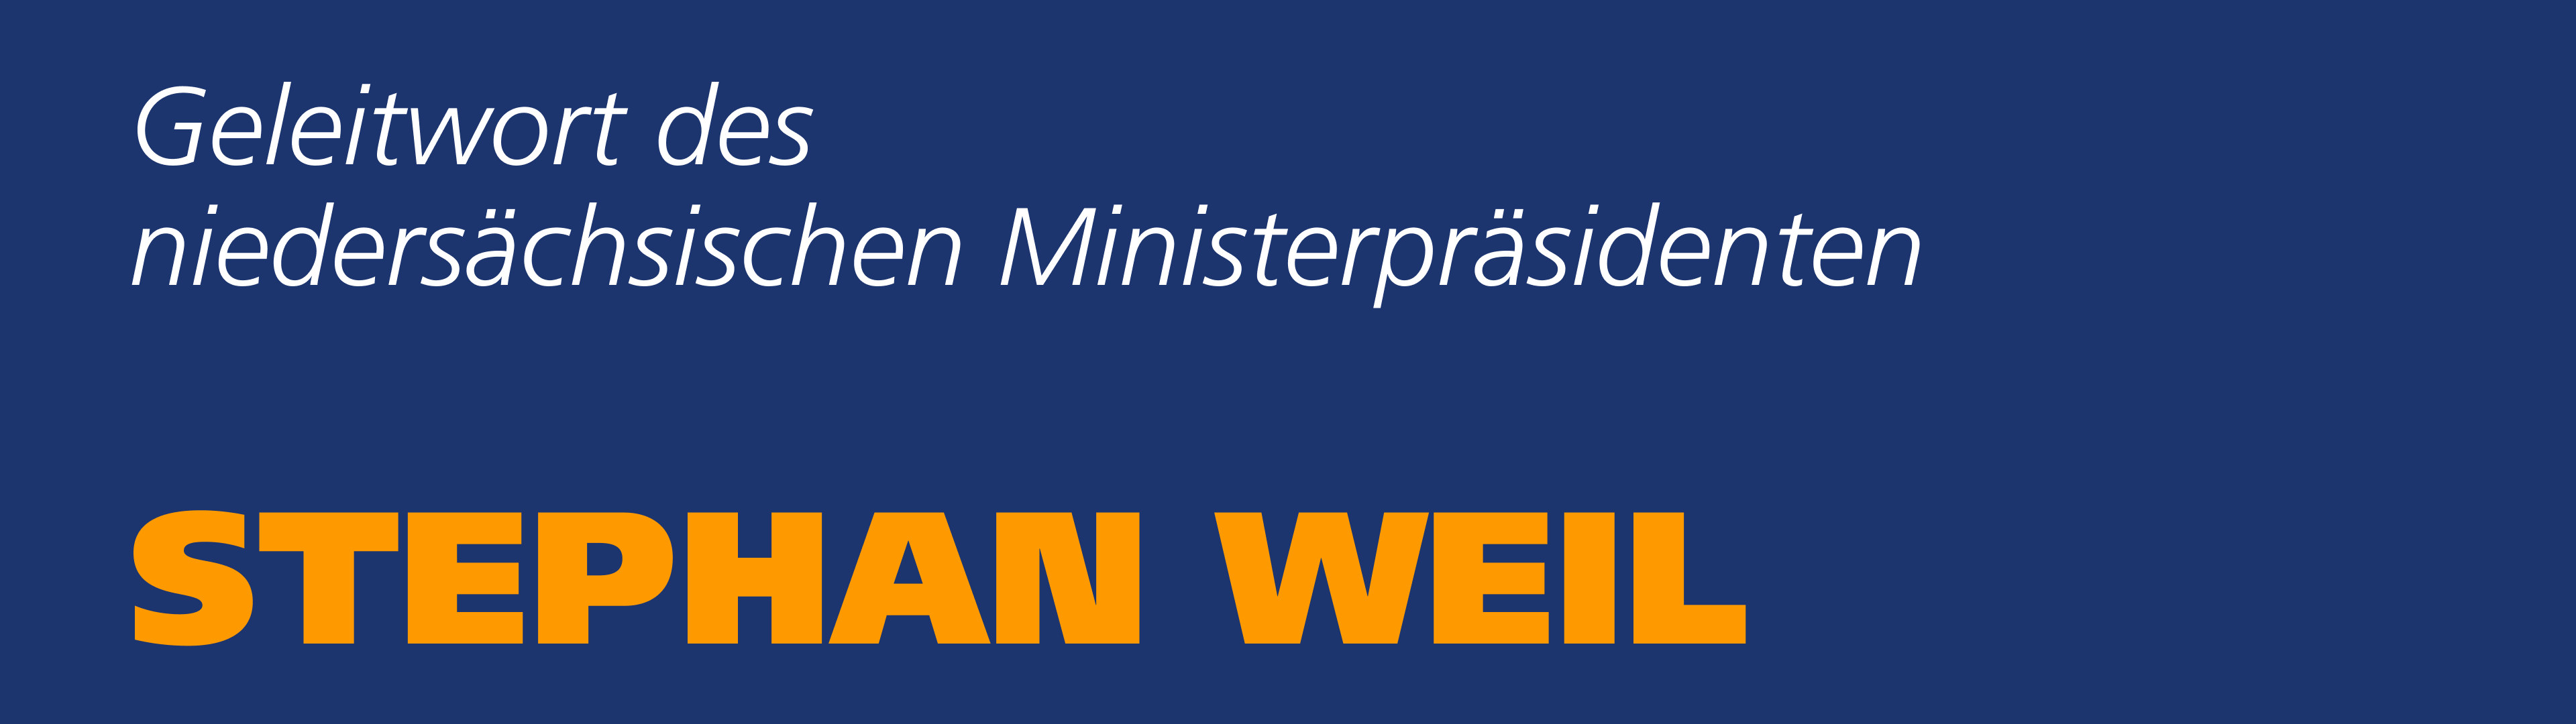 Geleitwort des niedersächsischen Ministerpräsidents Stephan Weil